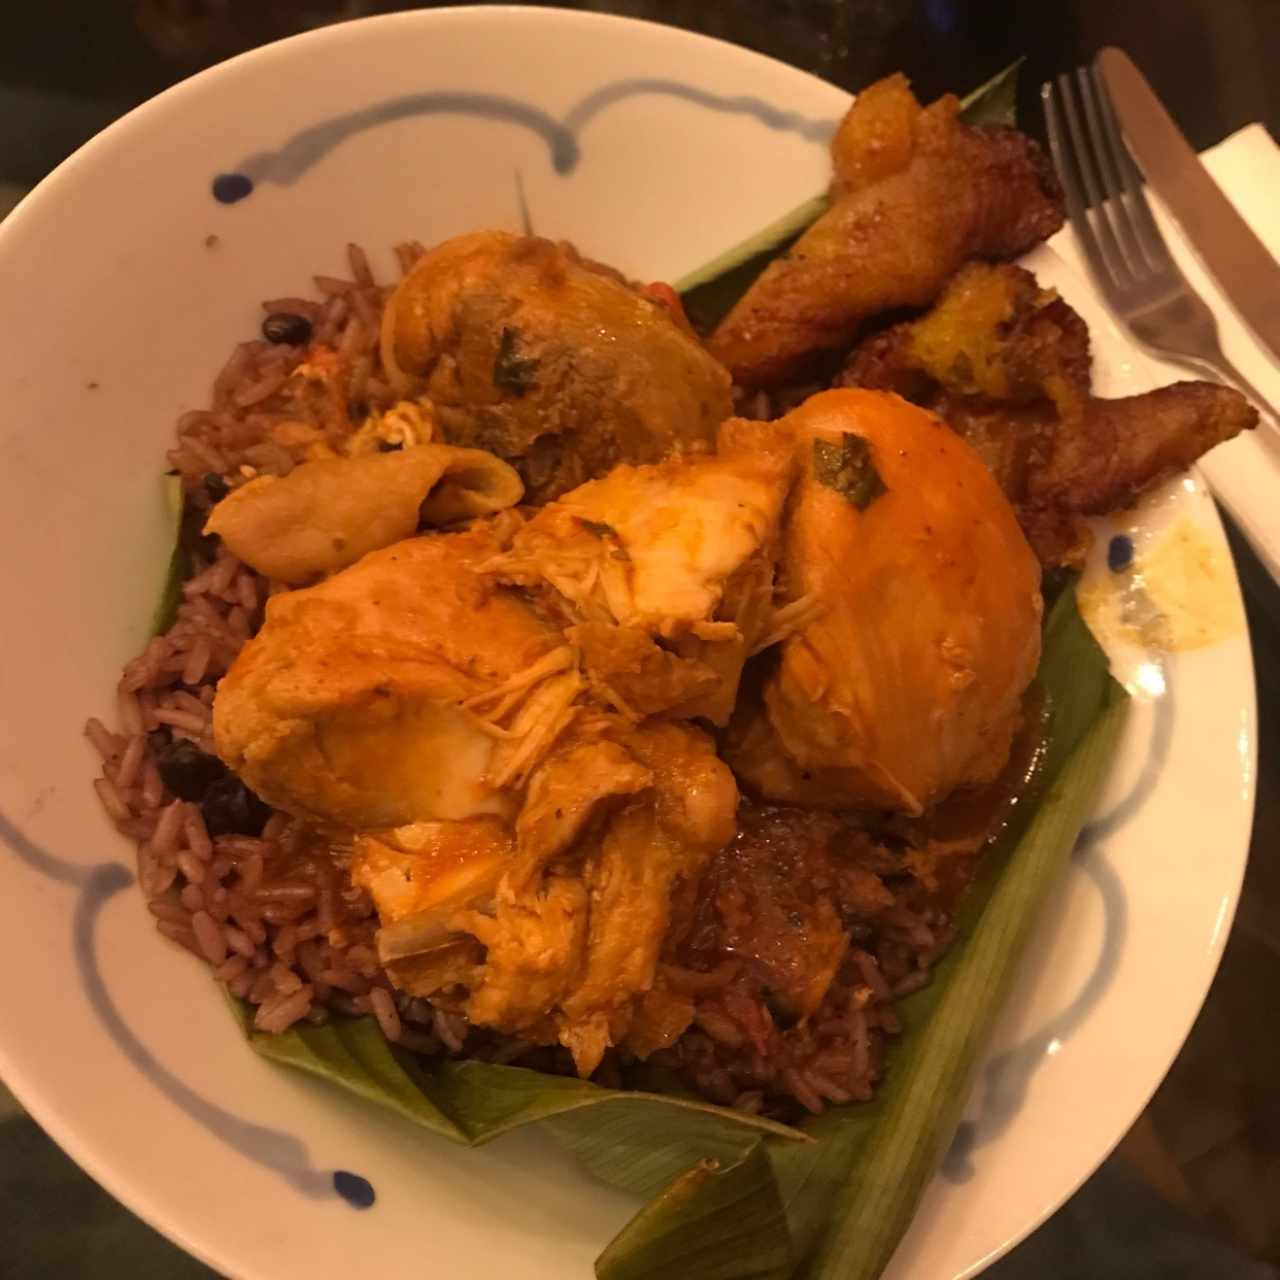 “El mono” pollo guisado y arroz con guandu